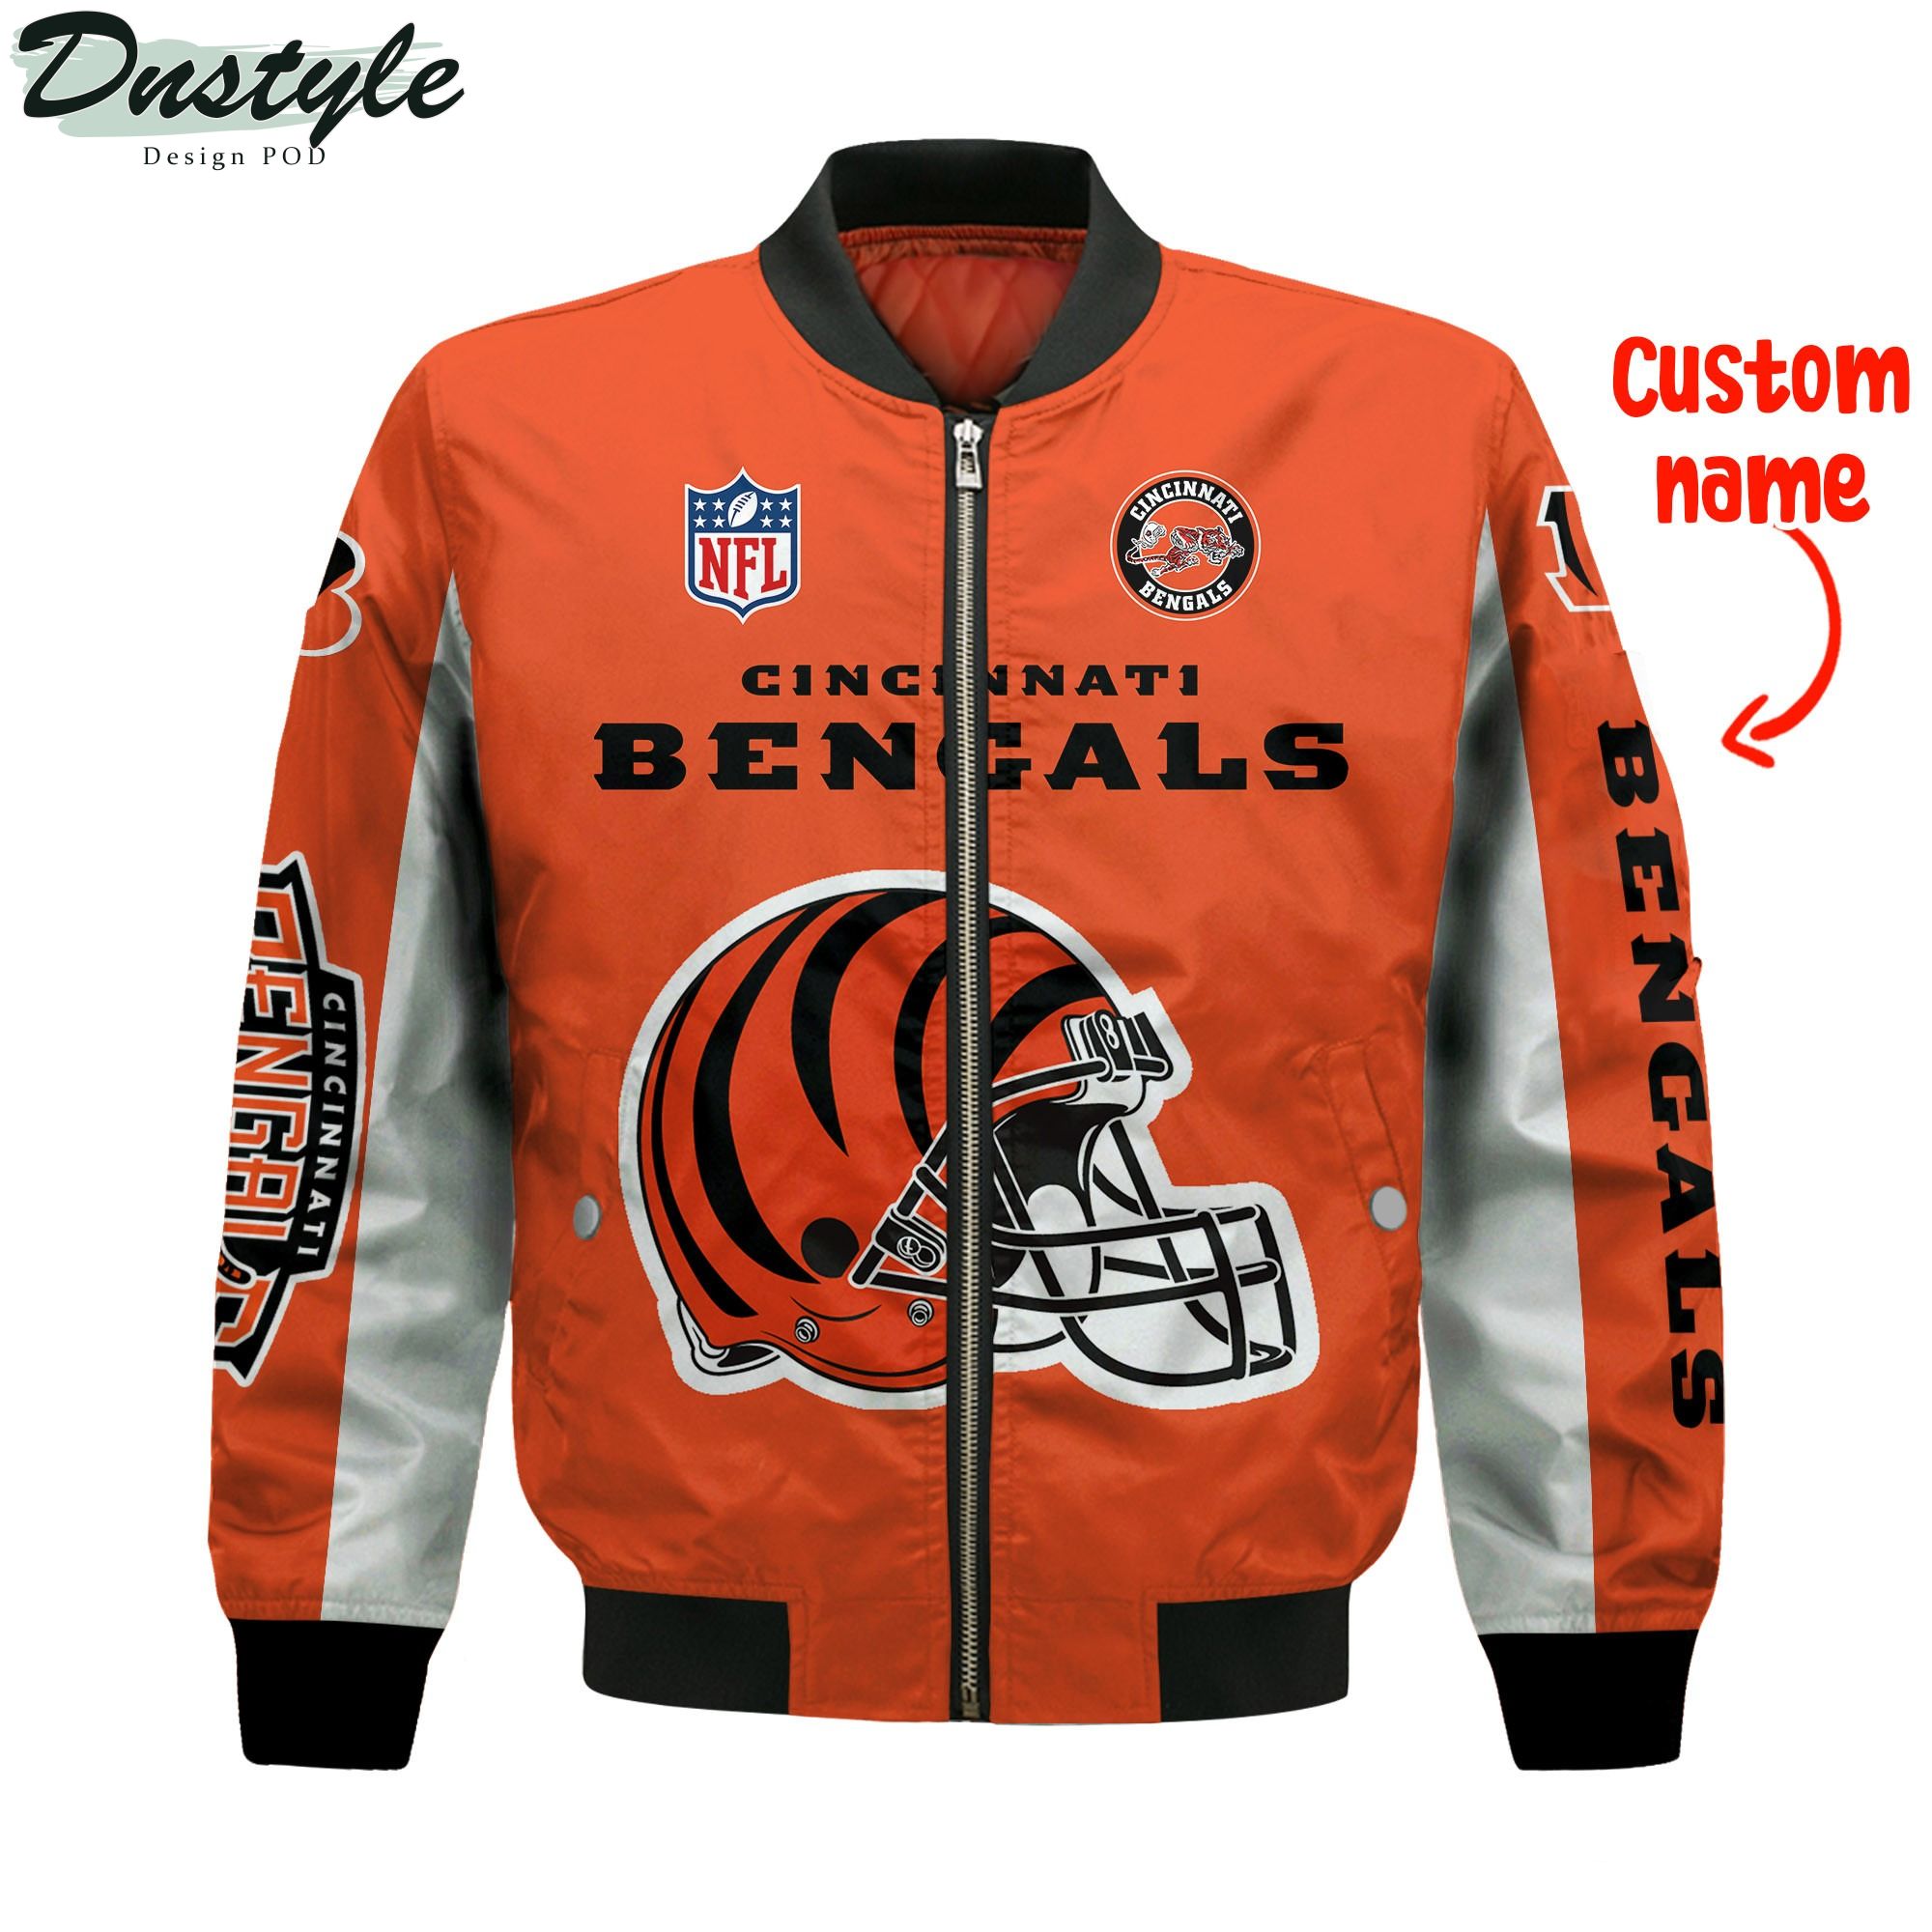 Cincinnati Bengals NFL Mascot Super Bowl LVI Champions 2021 Custom Name Bomber Jacket